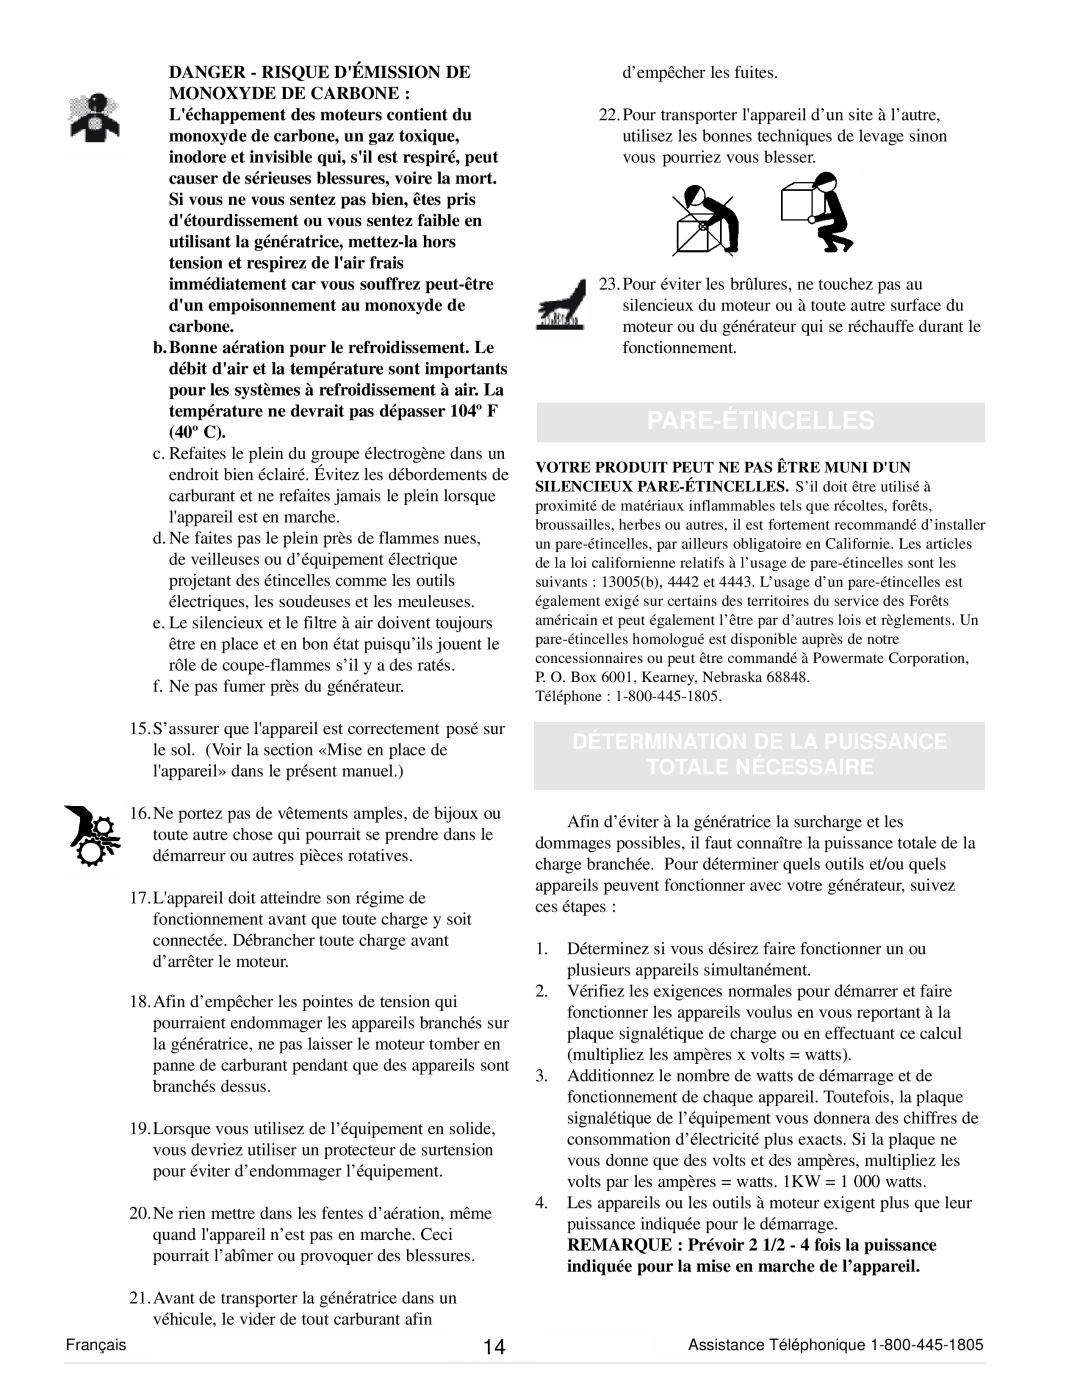 Powermate PM0101400 manual Pare-Étincelles, Détermination De La Puissance Totale Nécessaire 